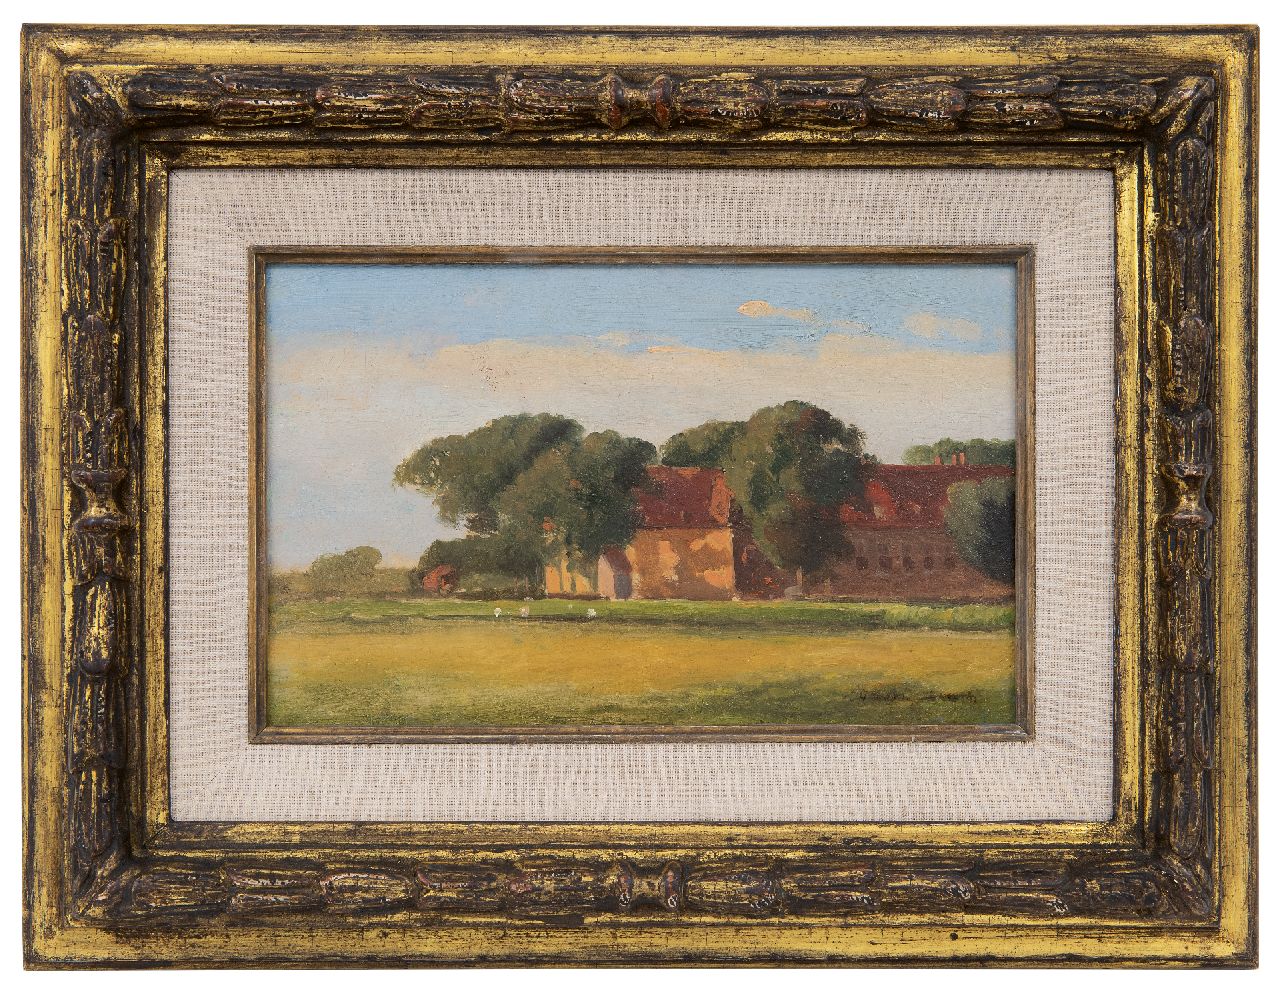 Weissenbruch H.J.  | Hendrik Johannes 'J.H.' Weissenbruch | Schilderijen te koop aangeboden | Landschap met boerderij - schets, olieverf op schildersboard 17,9 x 28,3 cm, gesigneerd rechtsonder